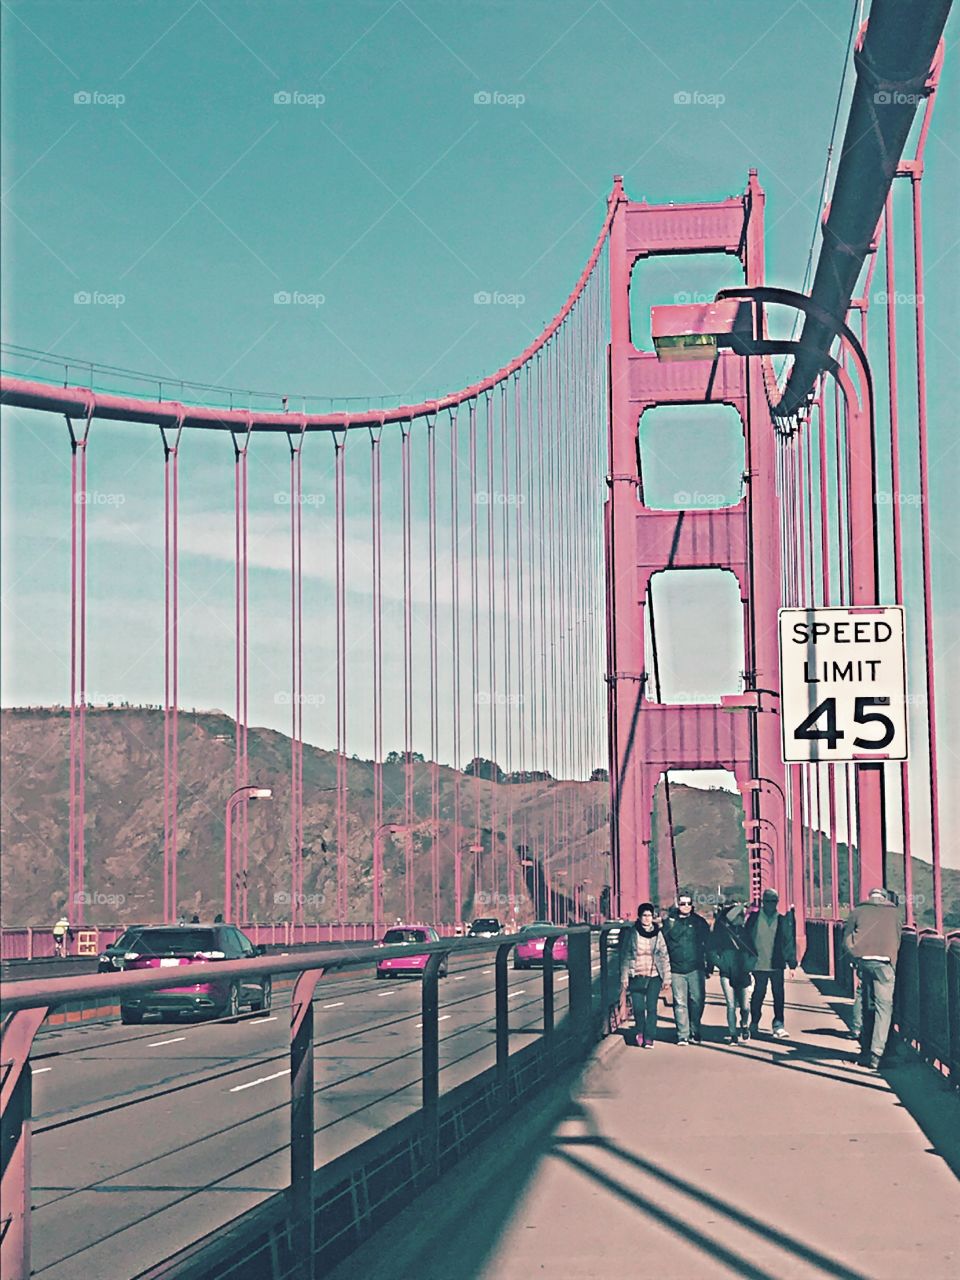 Tourists cross the famous Golden Gate Bridge despite the treacherous wind blowing them back.